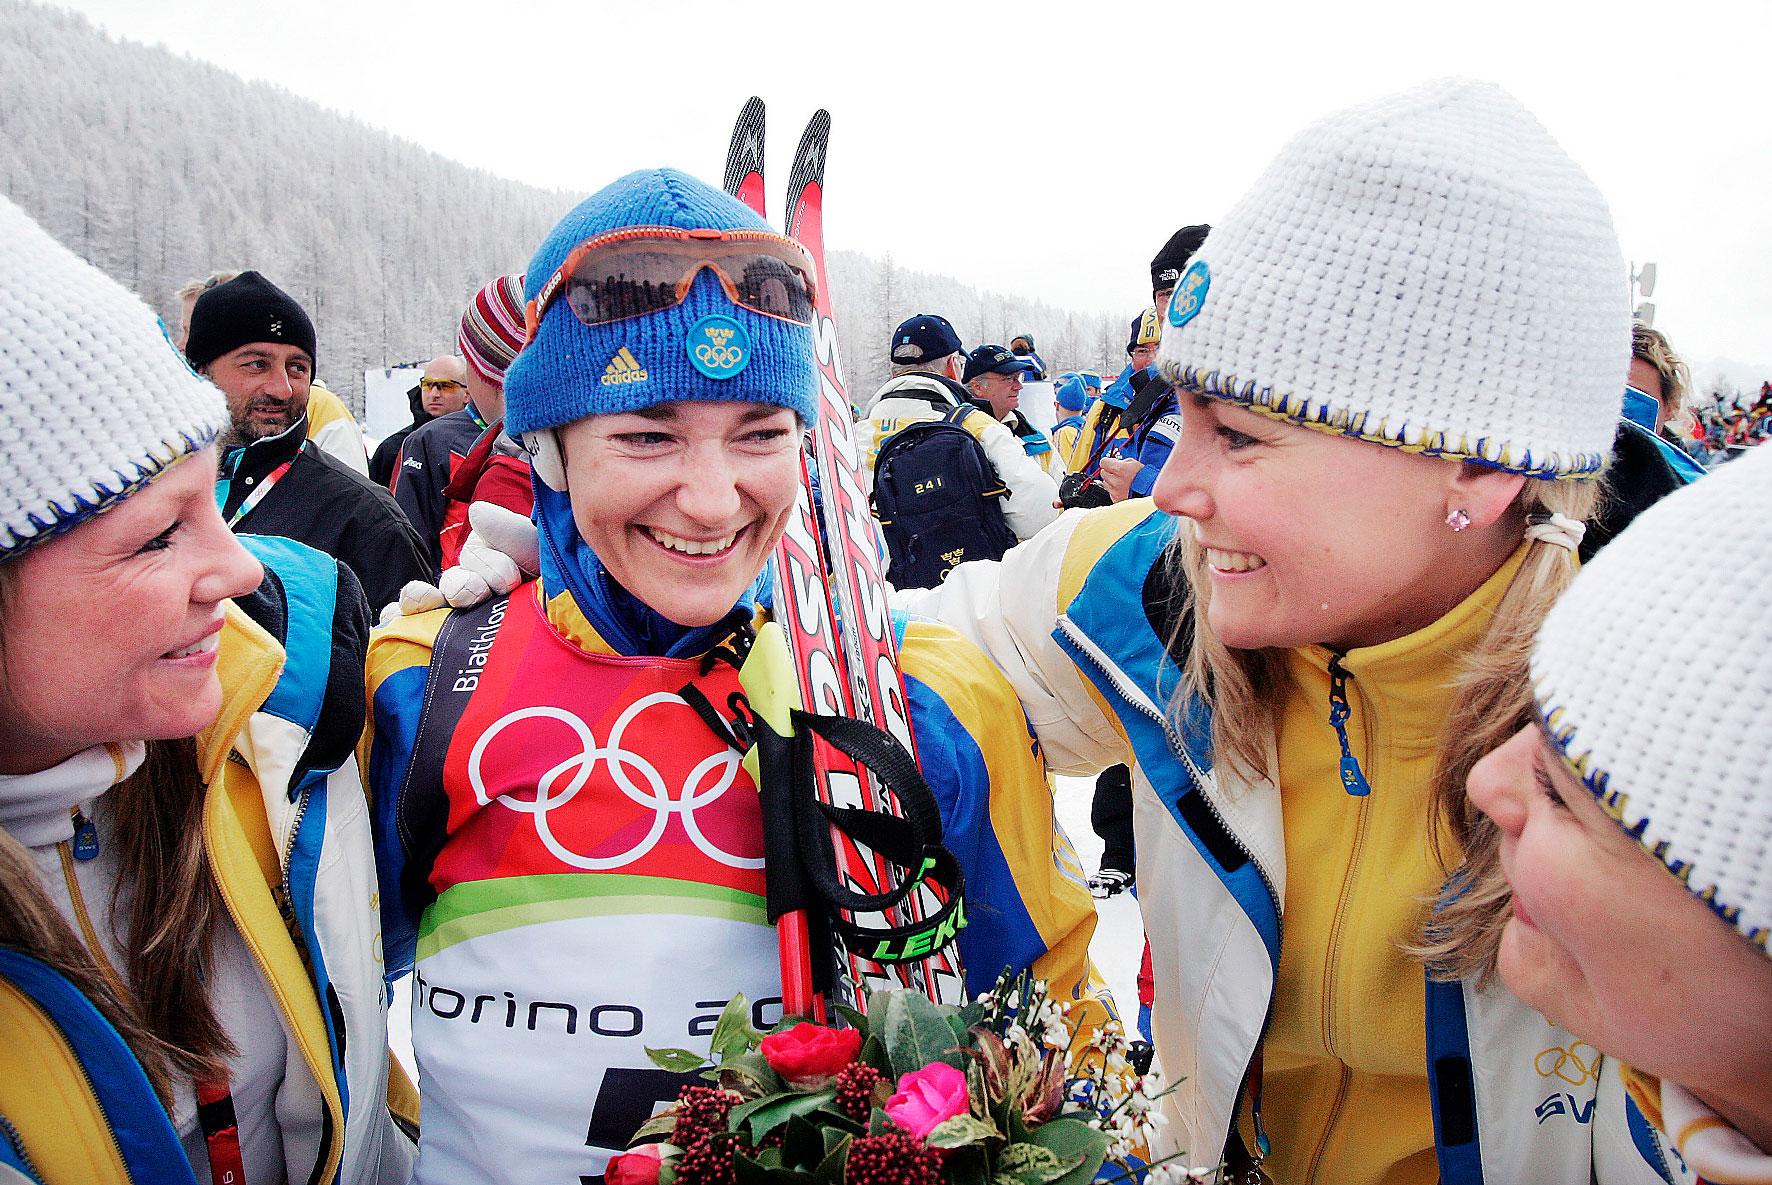 os-hjältar  Den 25 februari 2006 vann Anna Carin Zidek OS-guld i skidskytte. 
Två dagar tidigare hade barndomsvännen Anna Le Moine vunnit guld i curling.